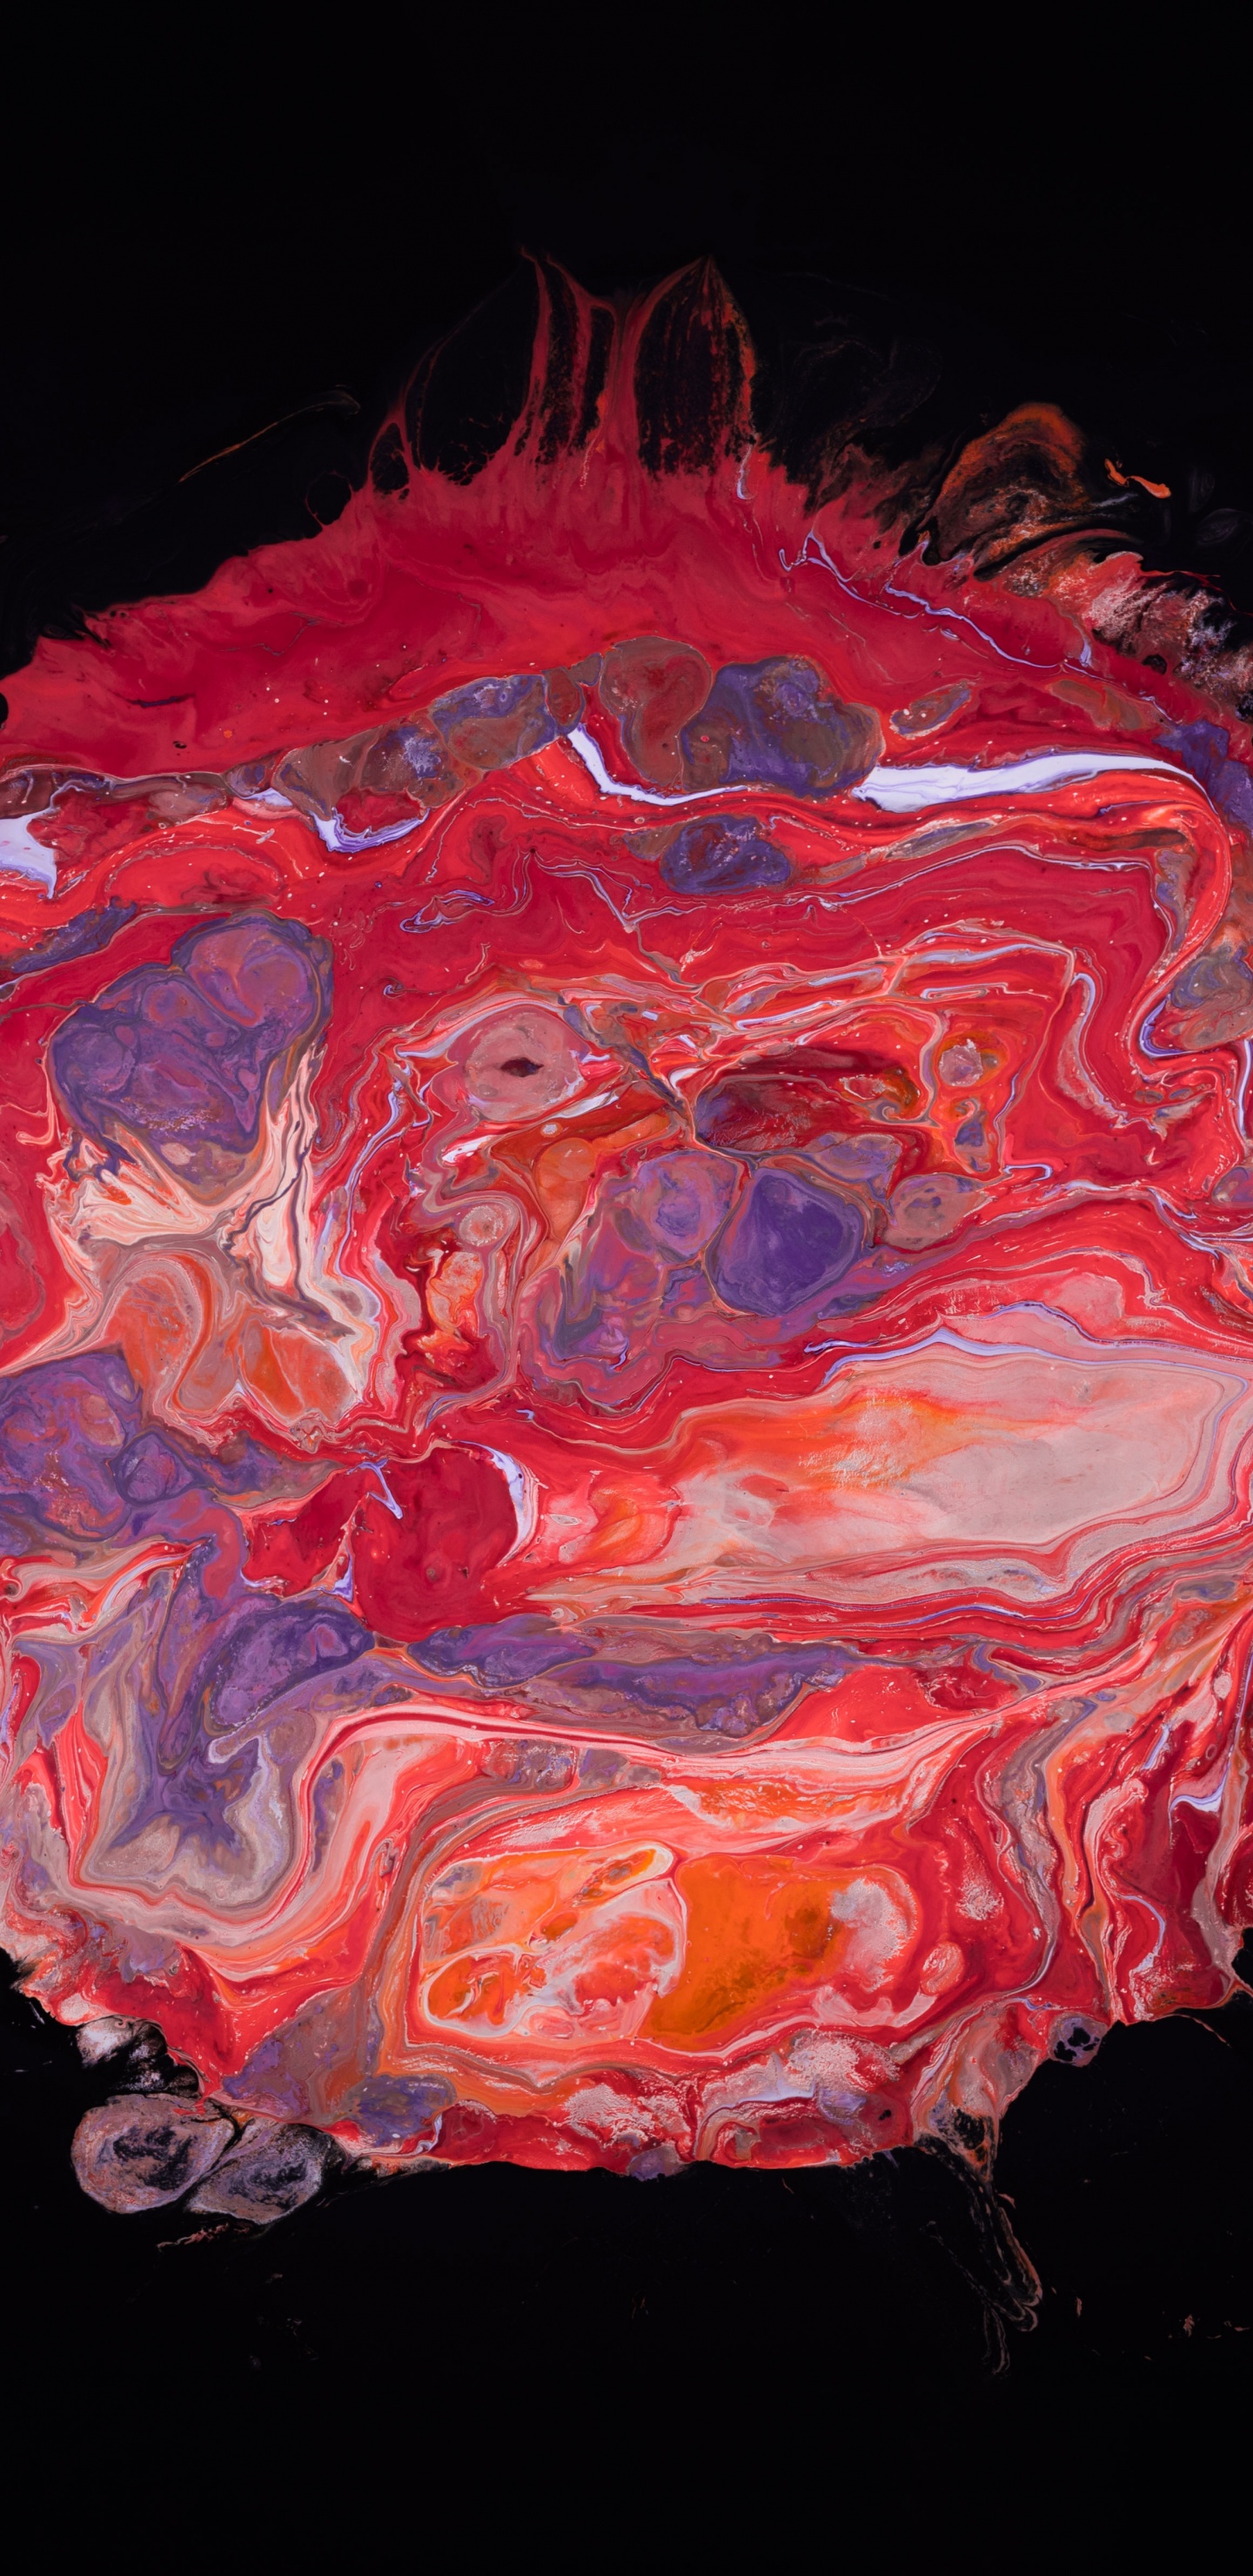 Peinture Abstraite Rouge et Blanche. Wallpaper in 1440x2960 Resolution